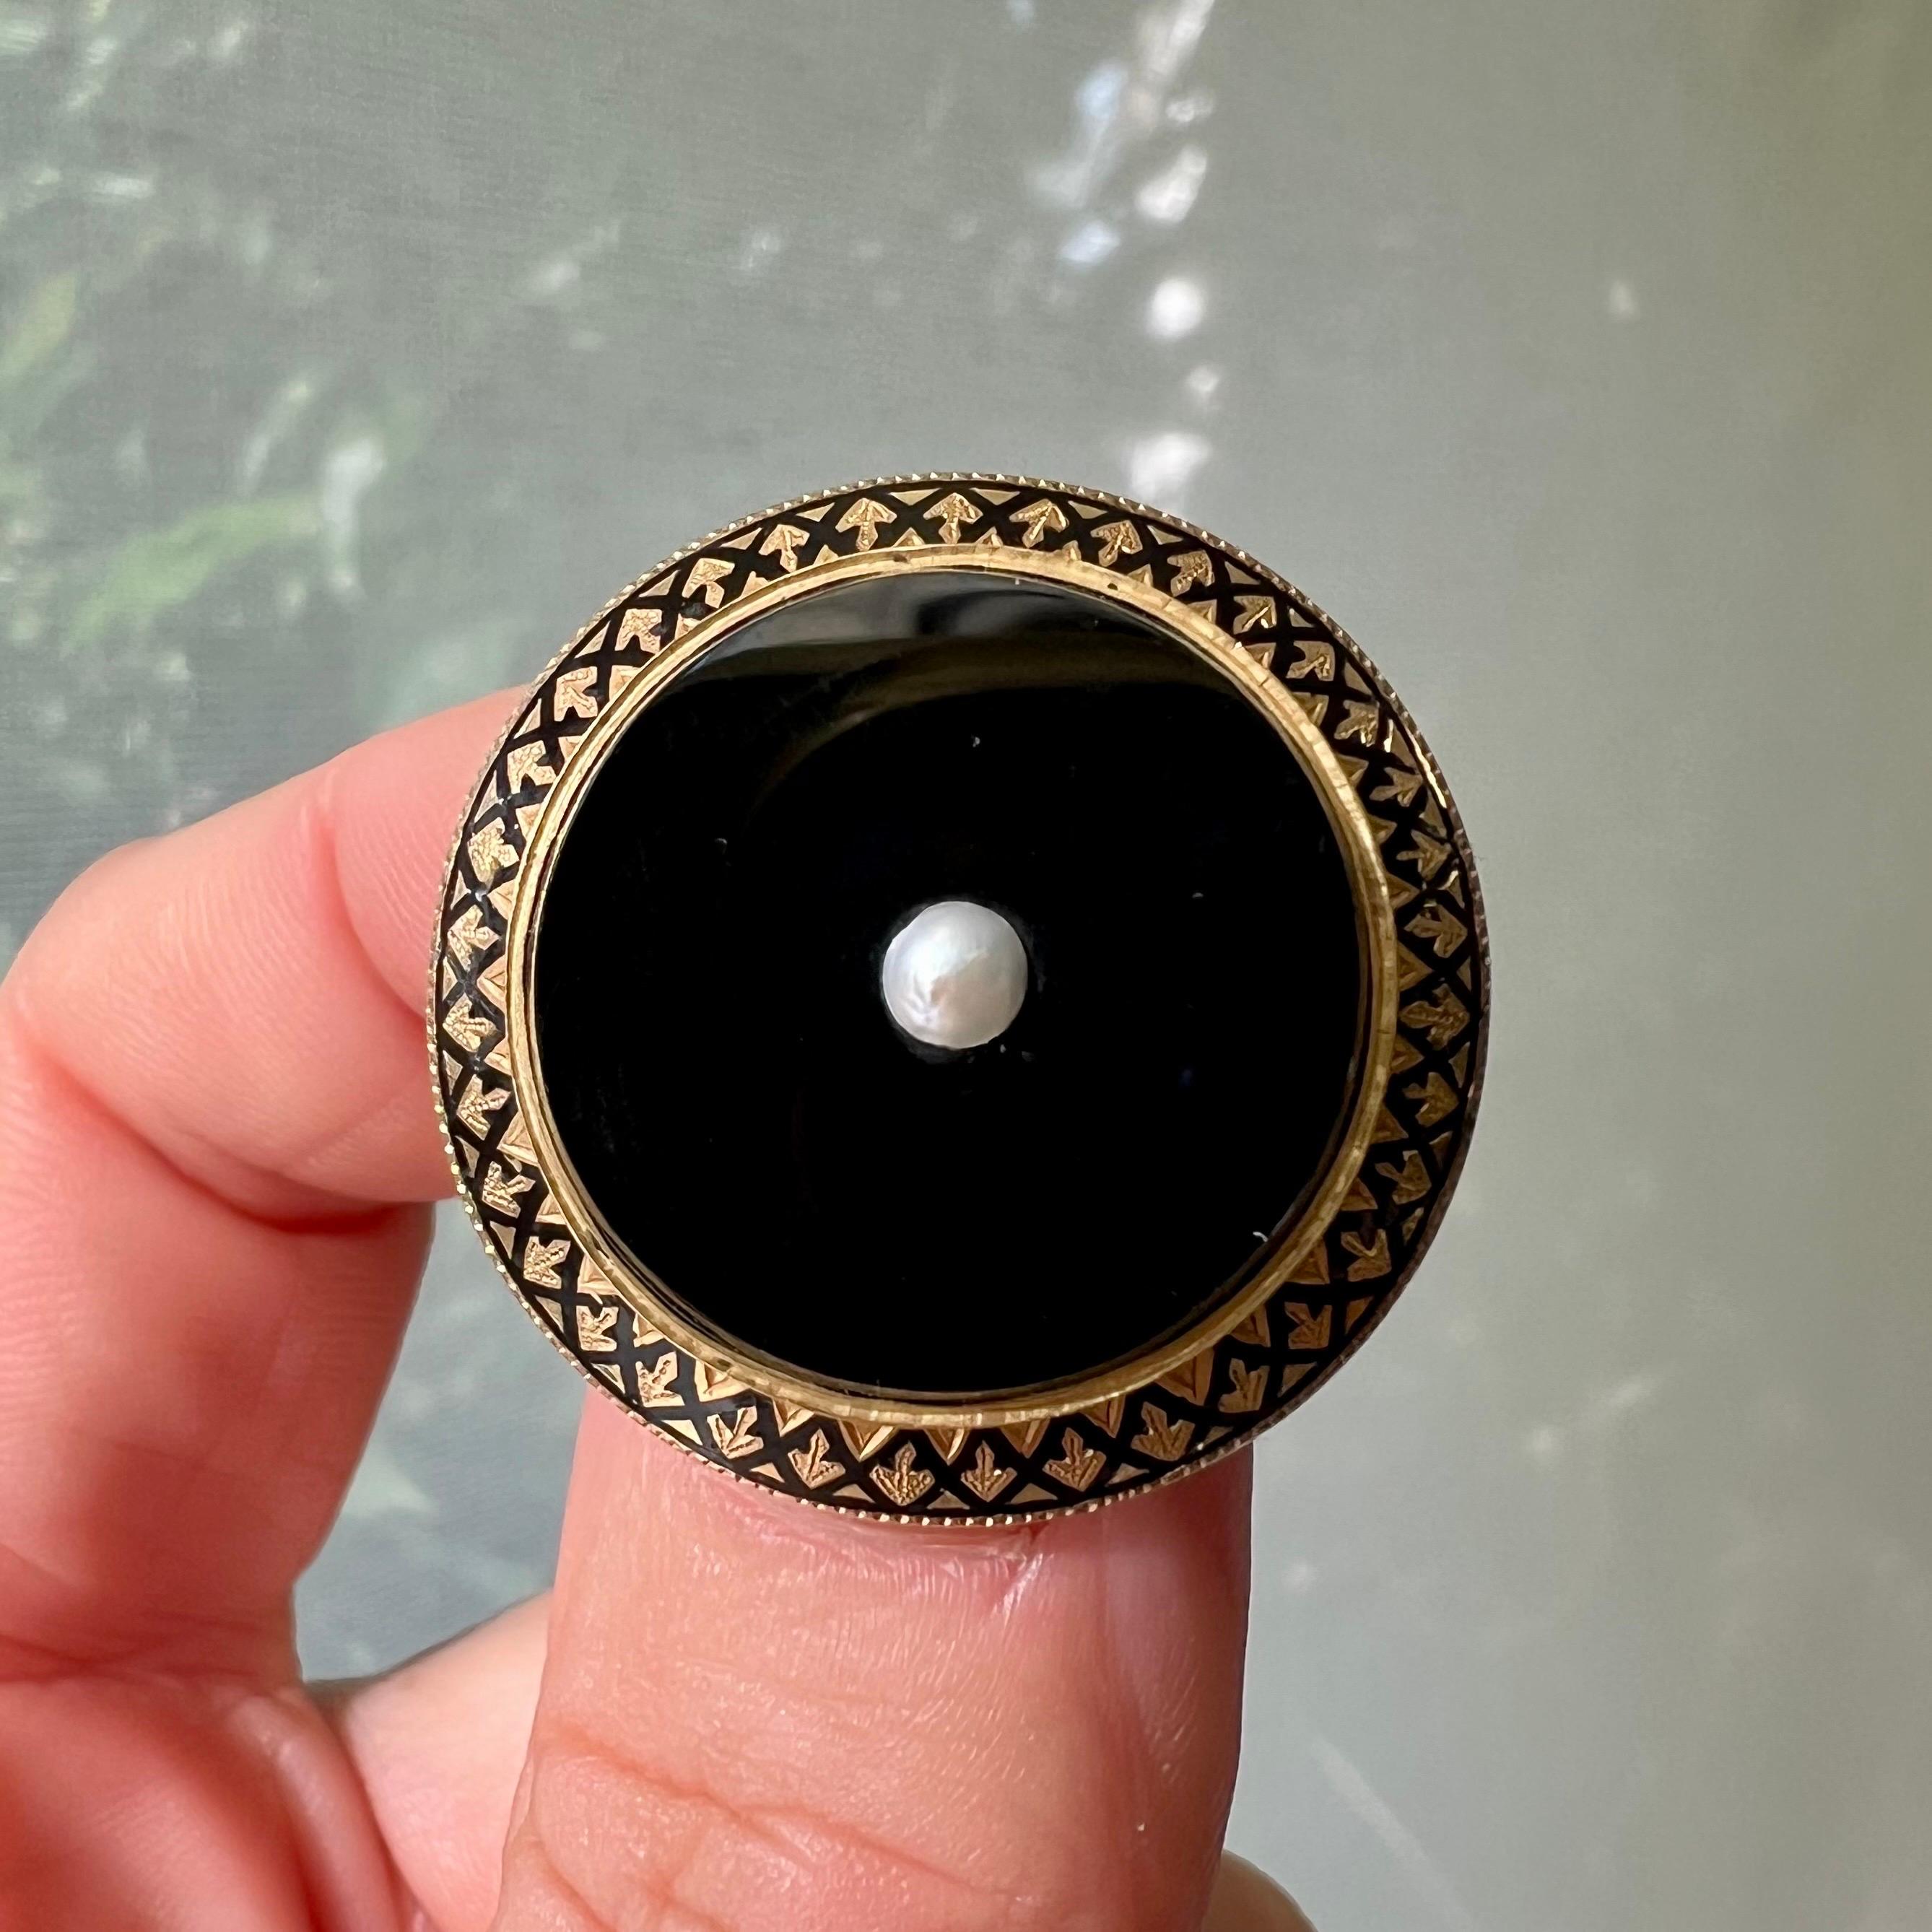 Cette broche ronde ancienne en or 18 carats et émail est créée avec de l'onyx noir et sertie d'une perle de rocaille au centre. Le bord de la broche est décoré d'émail noir et d'une bordure torsadée en or. L'épingle au dos de la broche est munie